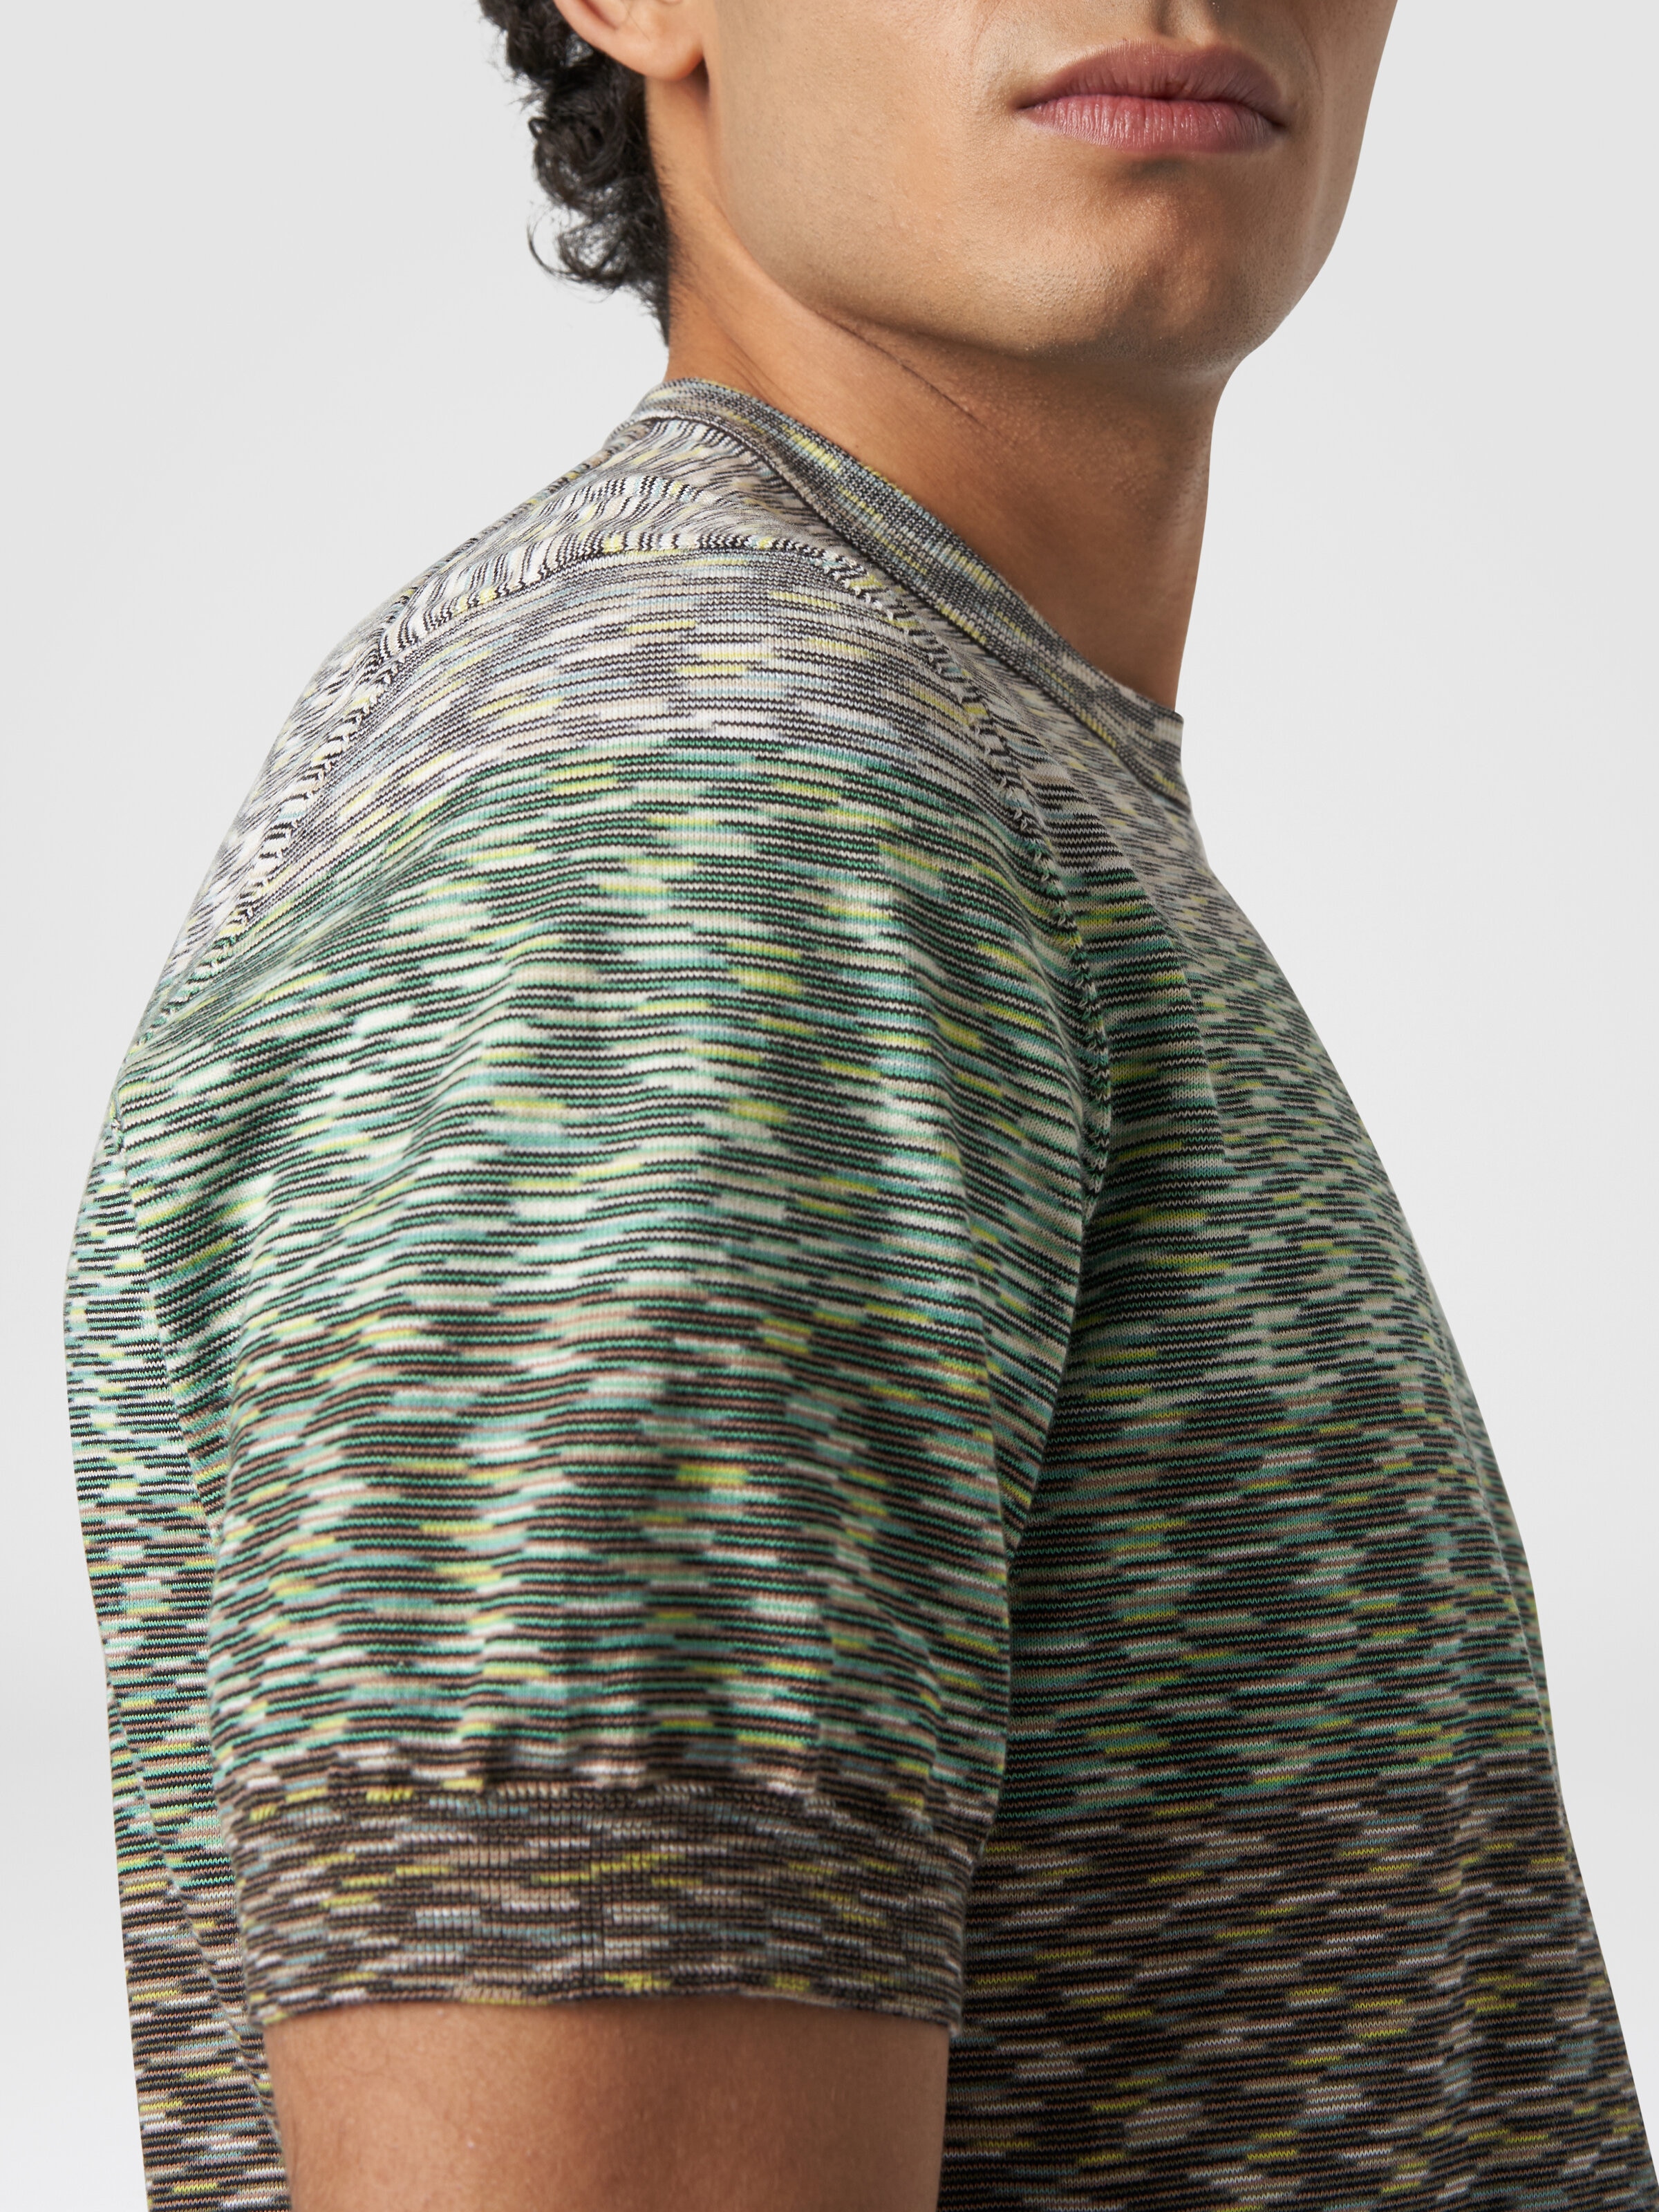 Camiseta de cuello redondo en algodón flameado degradado, Multicolor  - 4